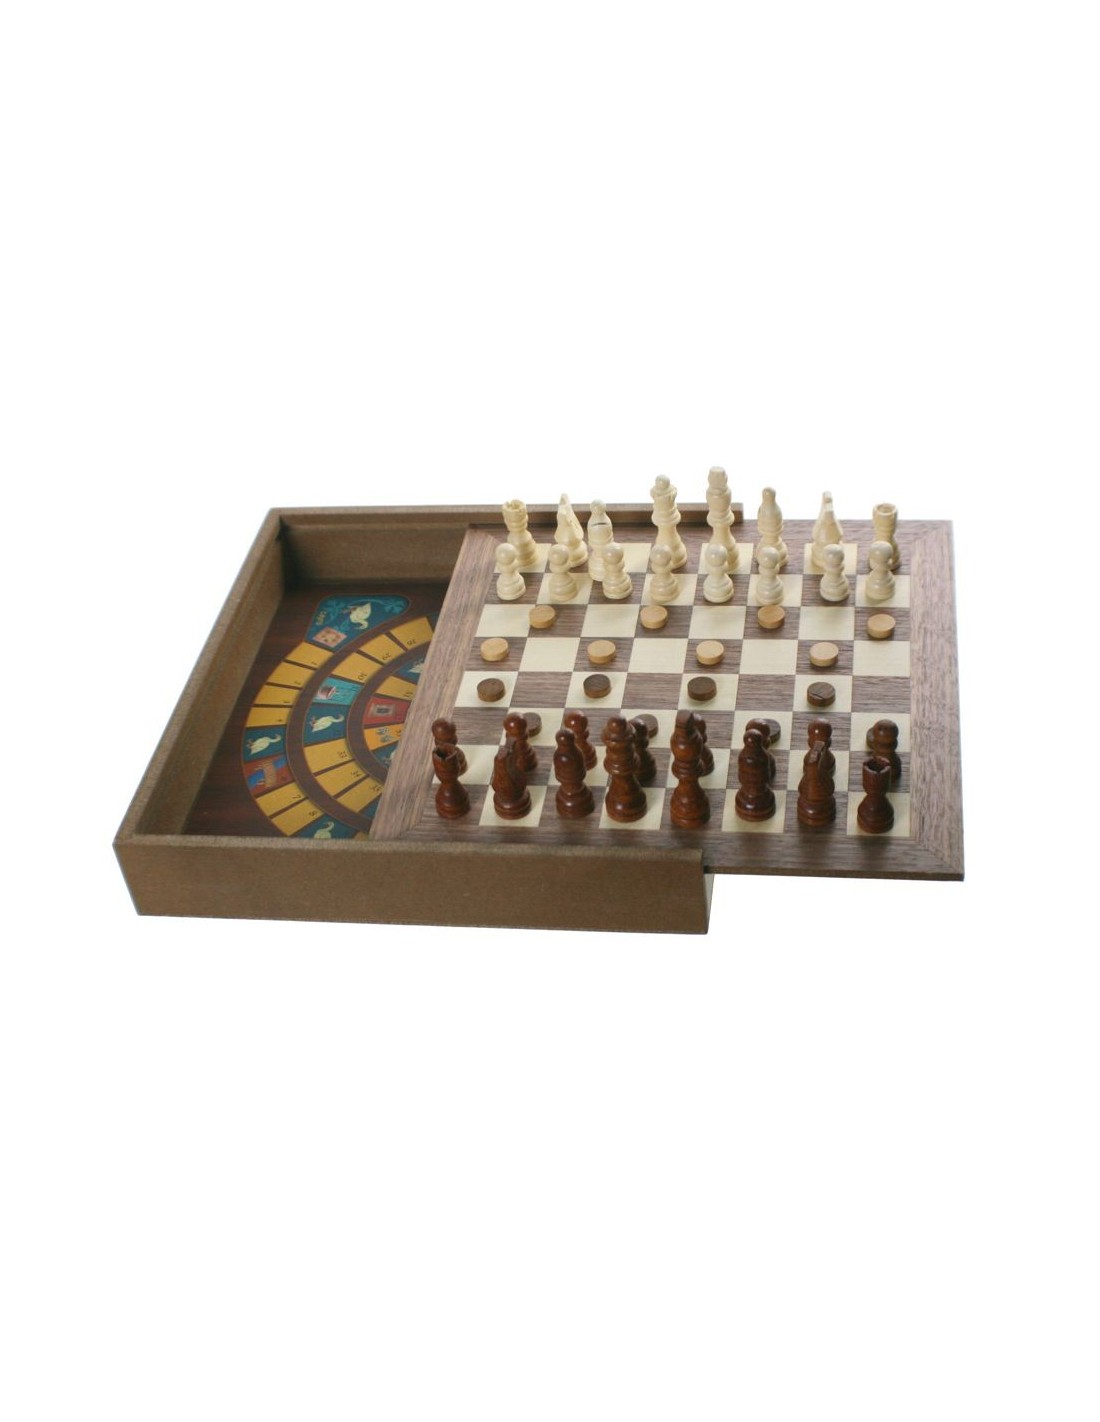 Set de jocs 5 en 1 en caixa de fusta amb fitxes incloses joc familiar de taula joc de taula reunits